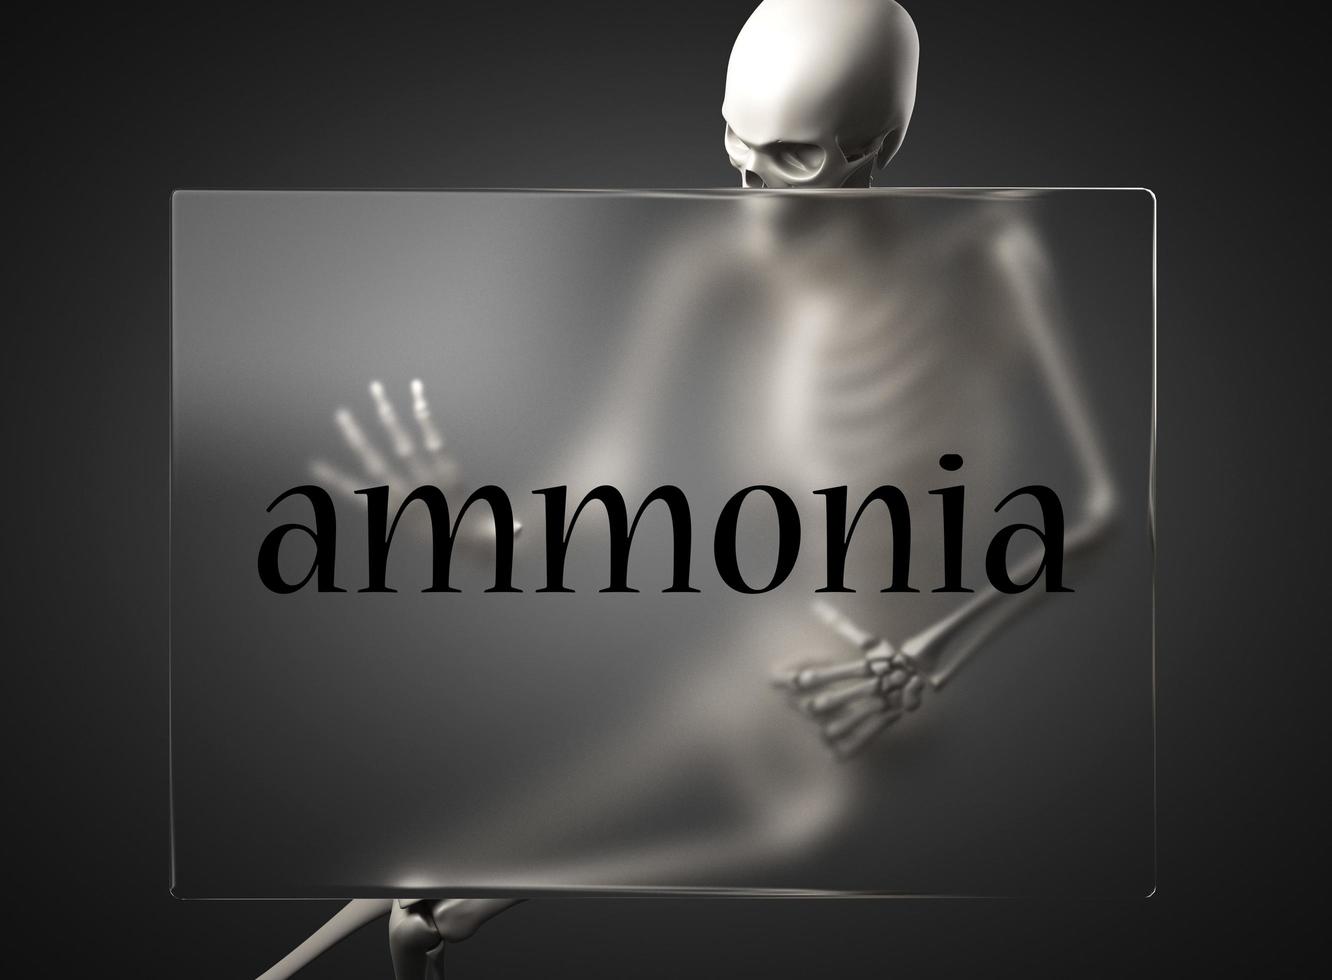 mot d'ammoniaque sur le verre et le squelette photo